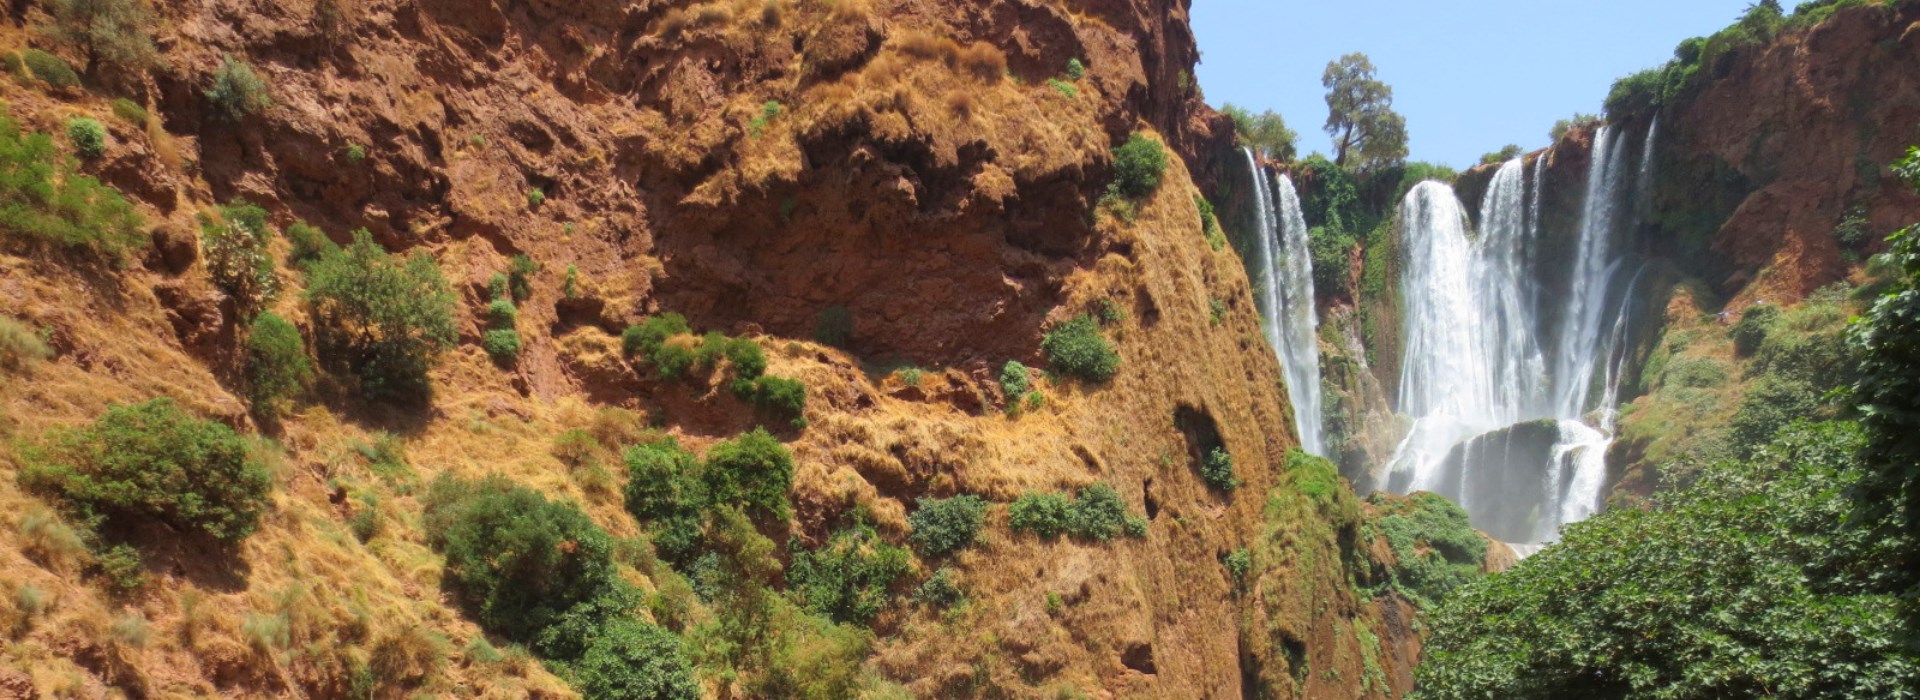 Visiter Les cascades d'Ouzoud - Maroc